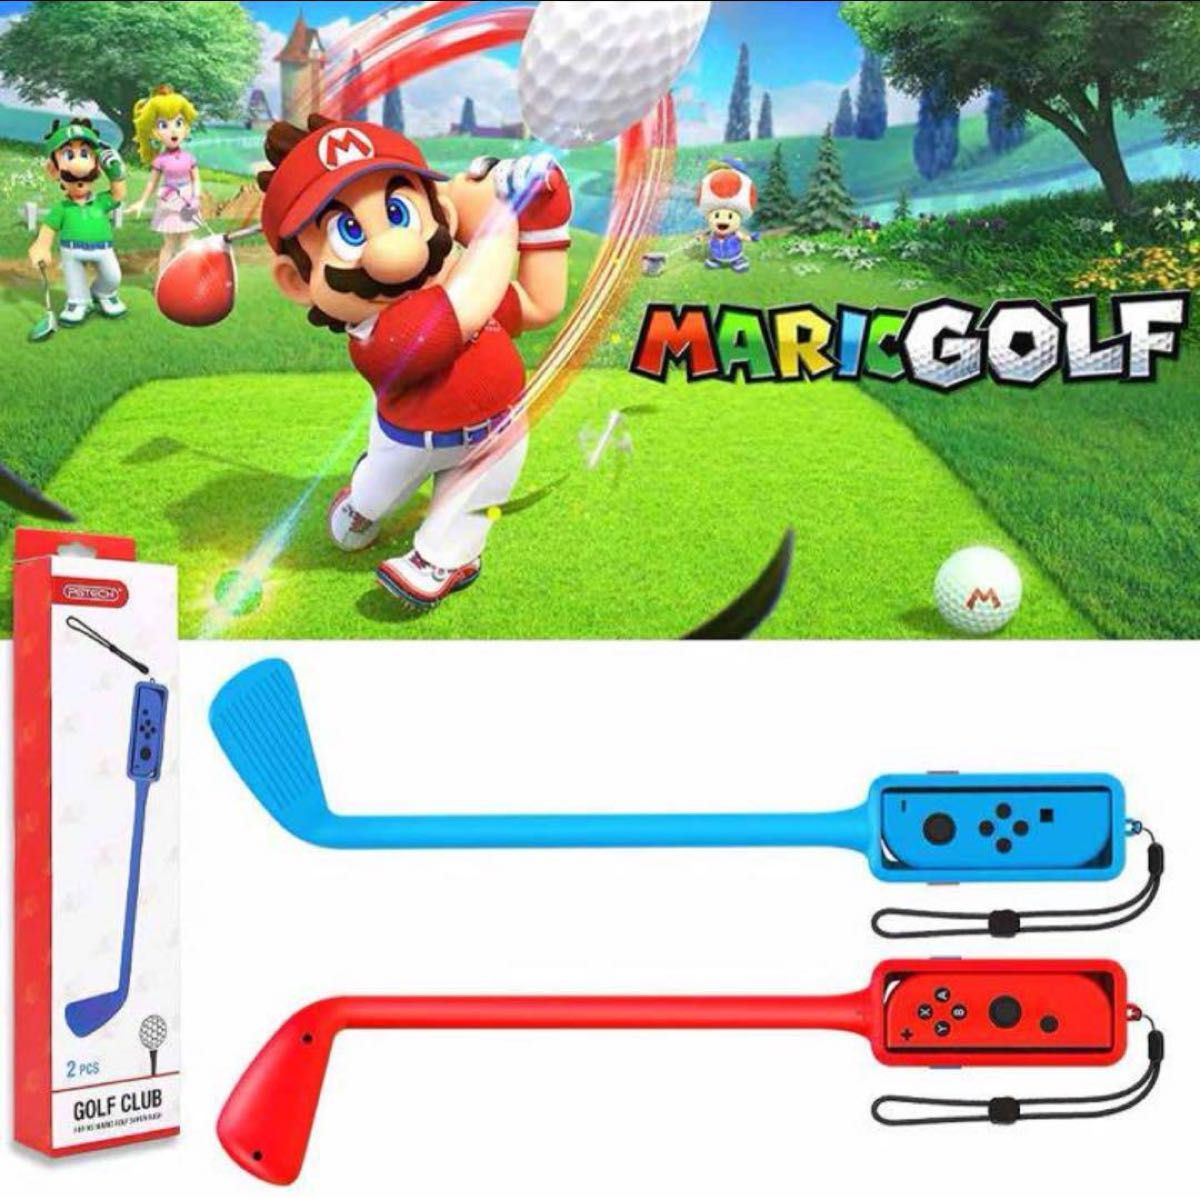 マリオゴルフクラブ 任天堂スイッチ用 マリオゴルフスーパーラッシュゴルフクラブ Nintendo Switch